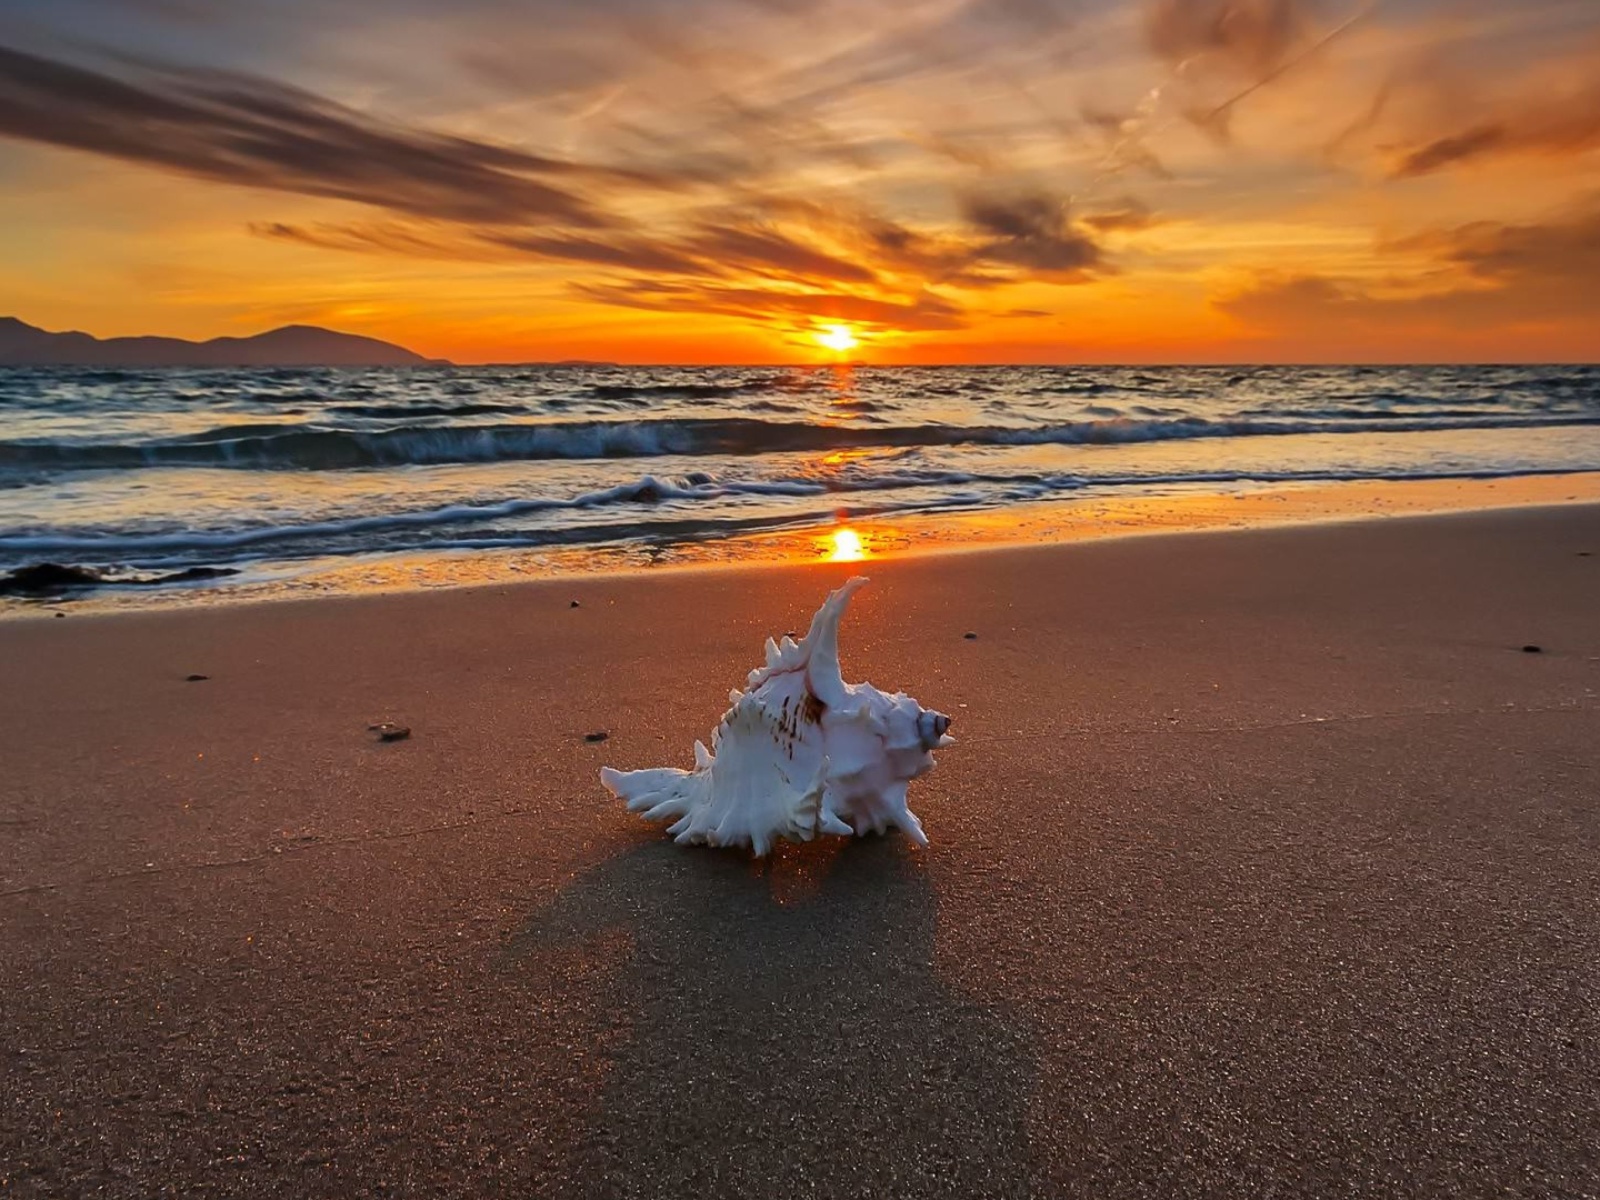 Обои Sunset on Beach with Shell 1600x1200